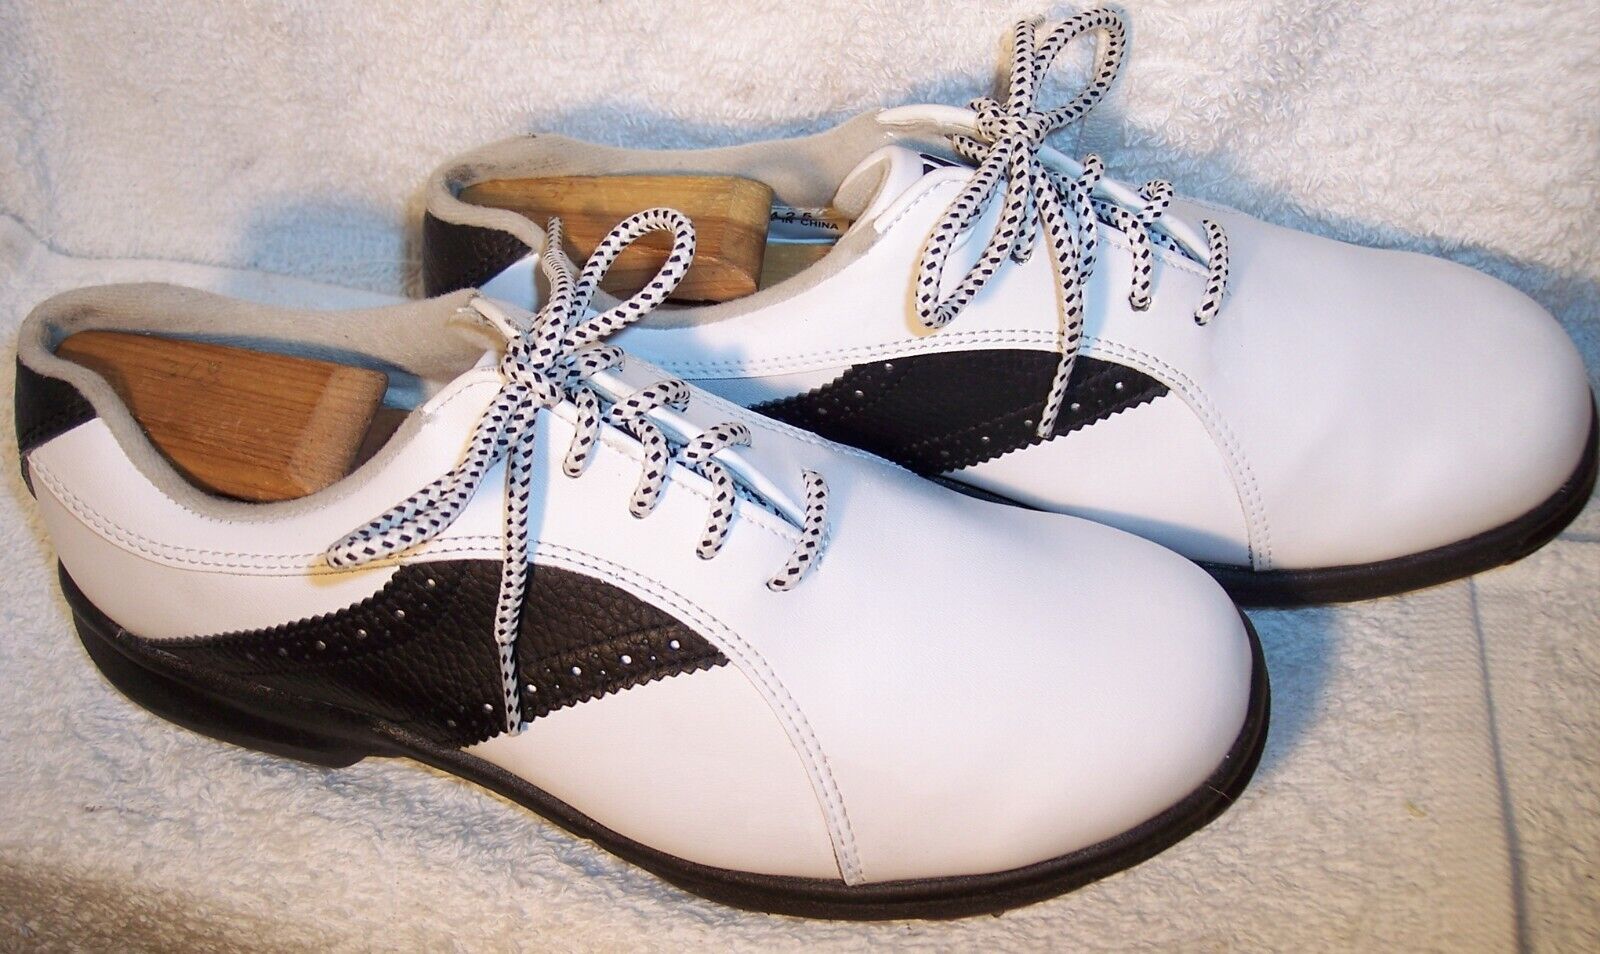 FootJoy GreenJoys 8.5M White Leather & Black Saddle Golf Shoes